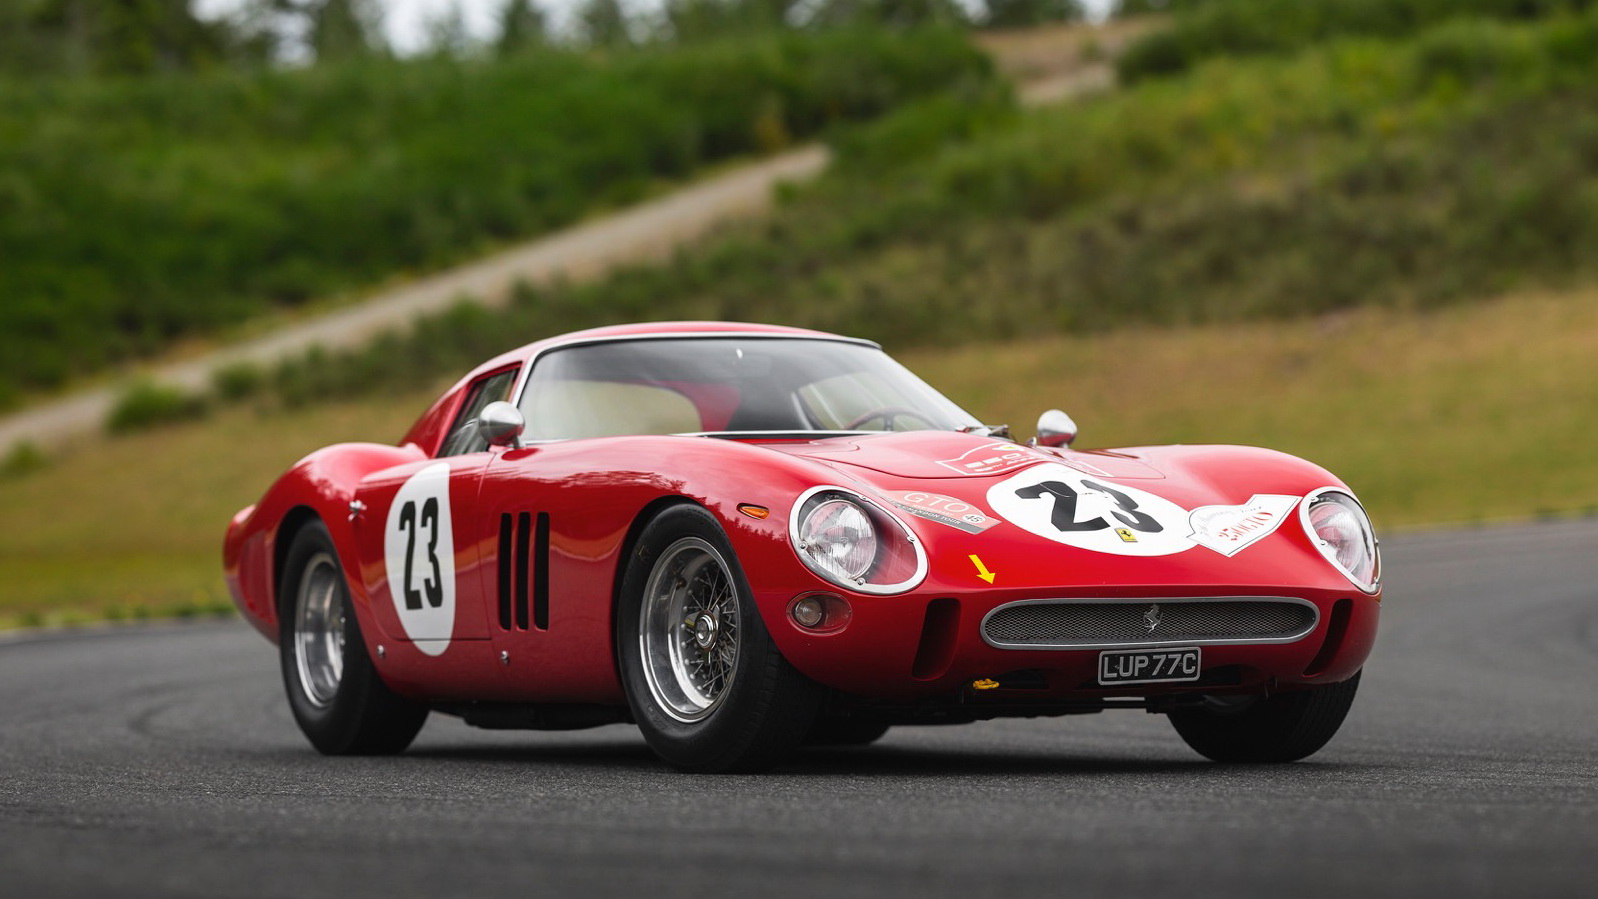 Τα πιο σπάνια και ακριβά αυτοκίνητα στον κόσμο: Ferrari 250GTO του 1964